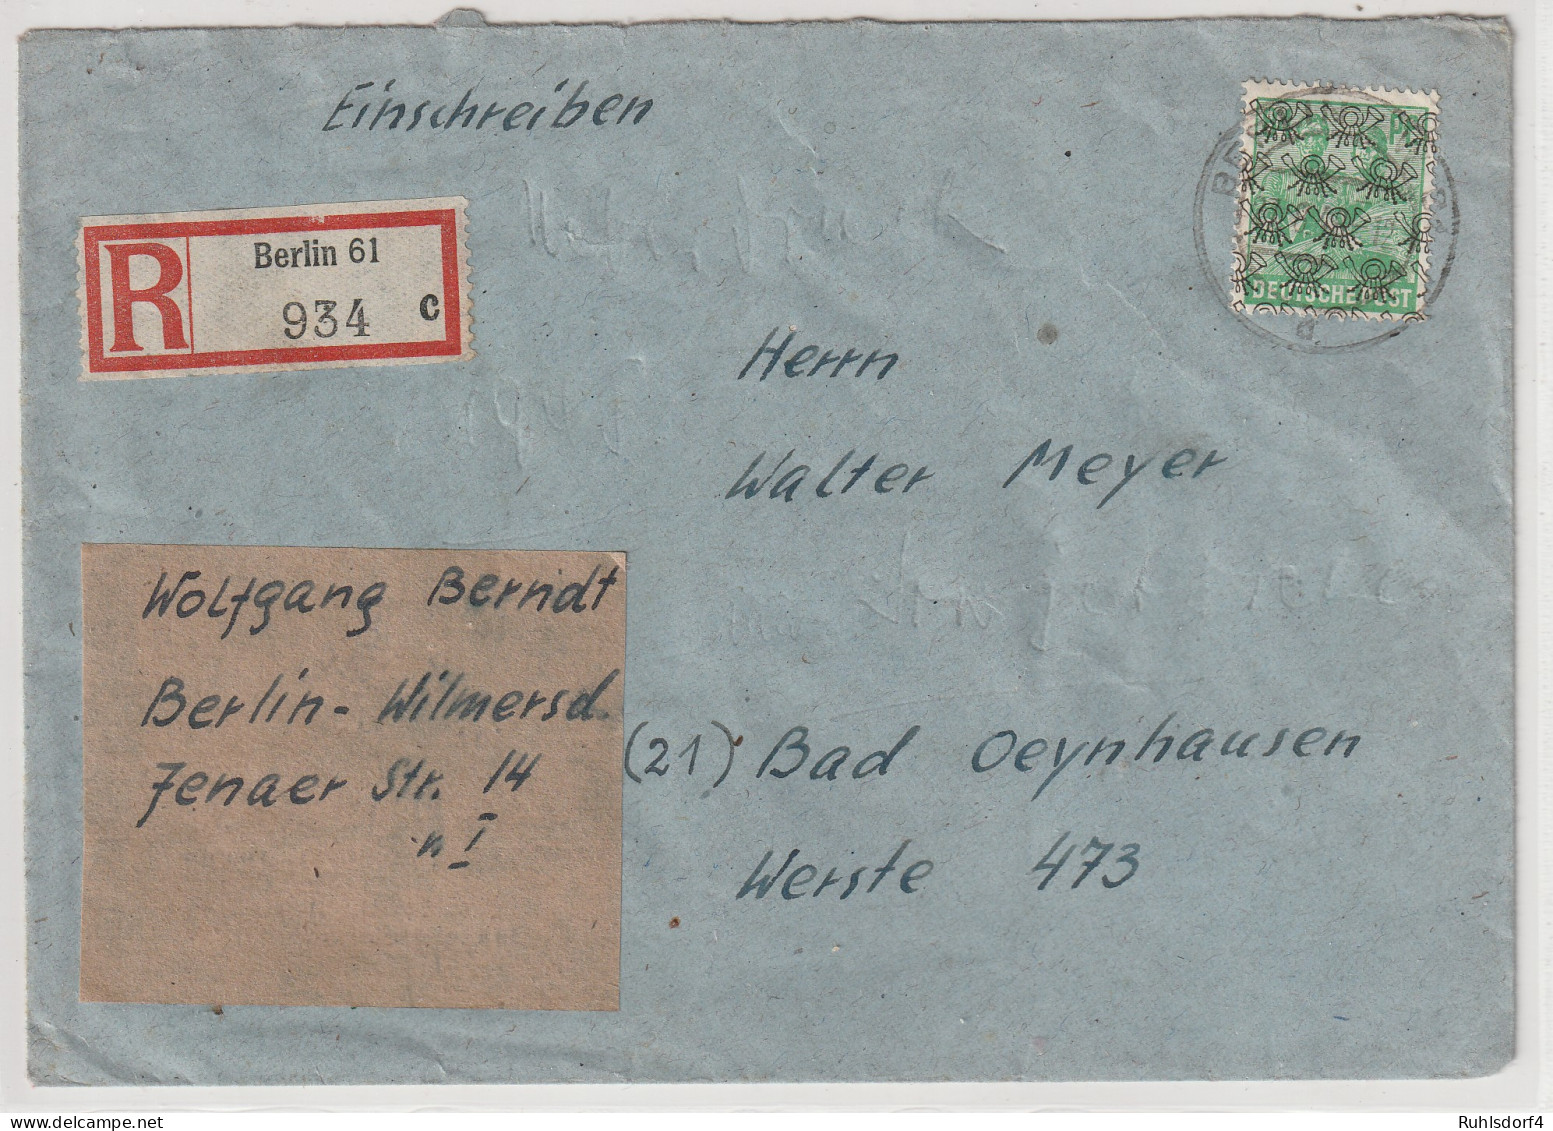 Berlin: 84 Pfg. Posthorn Netz Auf R-Fern-Brief In WBerlin Verwendet, Gepr. - Covers & Documents